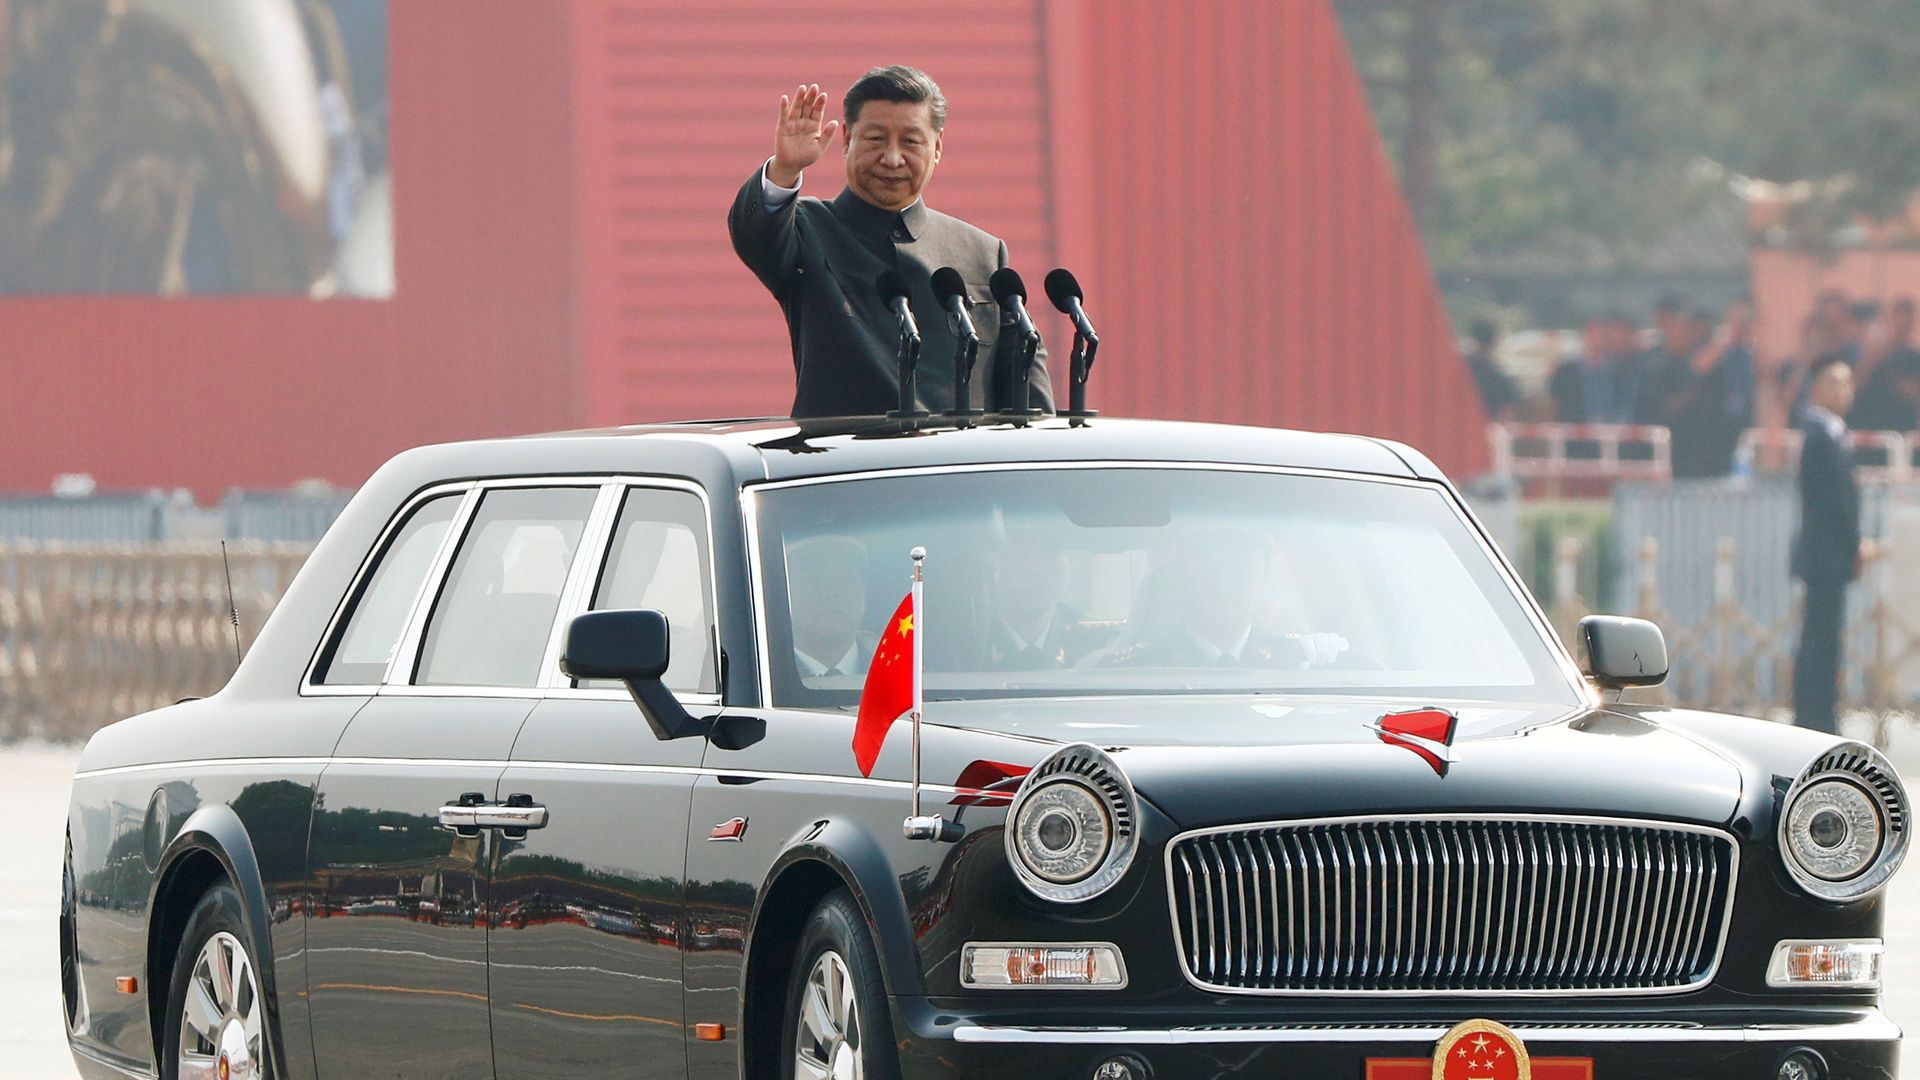 Xi riding in a car at military parade